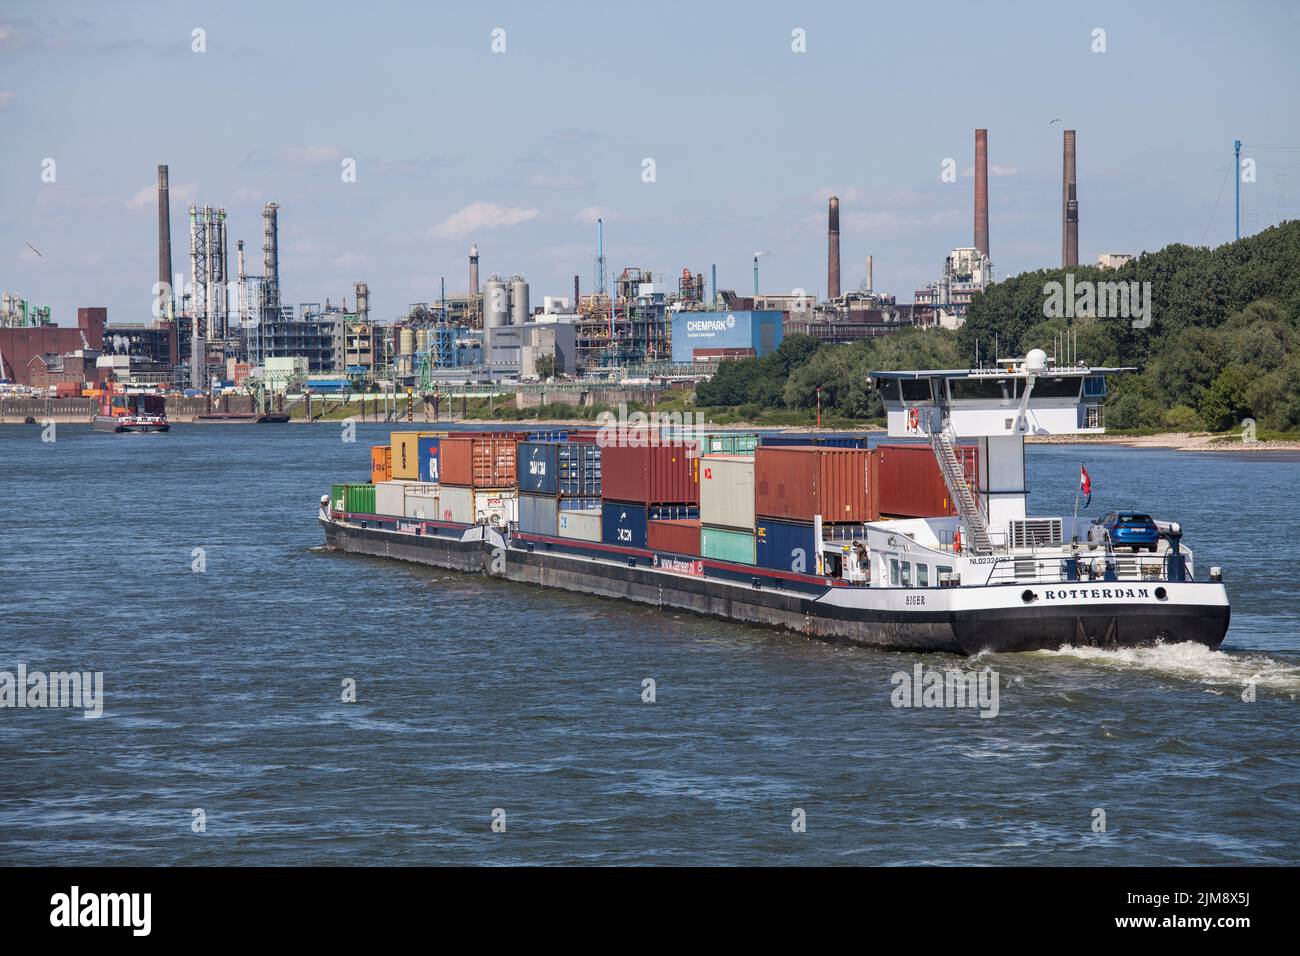 Navire-conteneur sur le Rhin, vue sur le Chempark, anciennement connu sous le nom d'usine Bayer, Leverkusen, Rhénanie-du-Nord-Westphalie, Allemagne. Containerschiff Banque D'Images